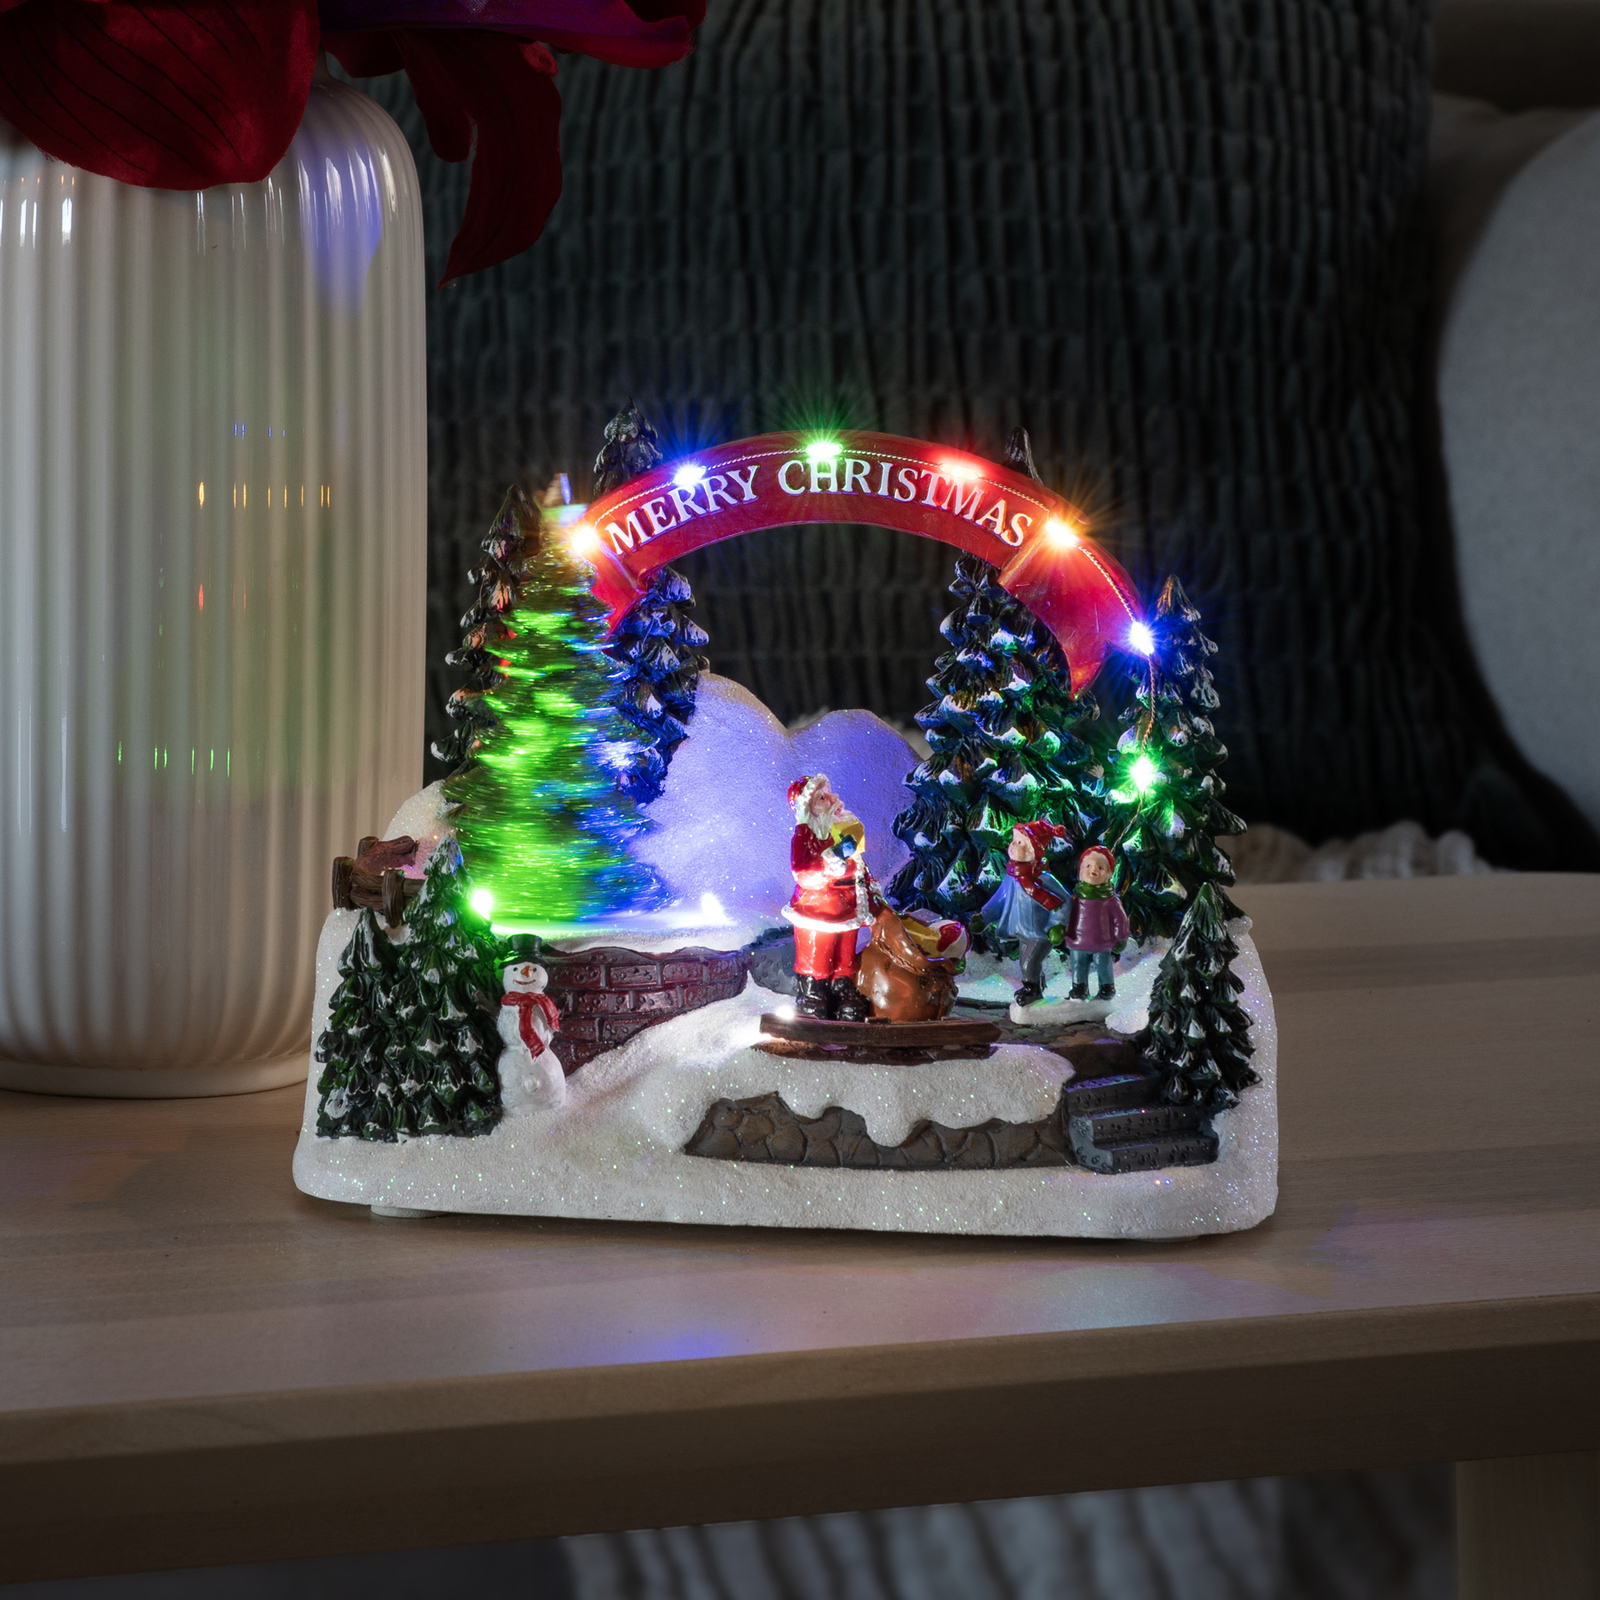 LED-Dekoleuchte Santa und Kinder, mit Musik